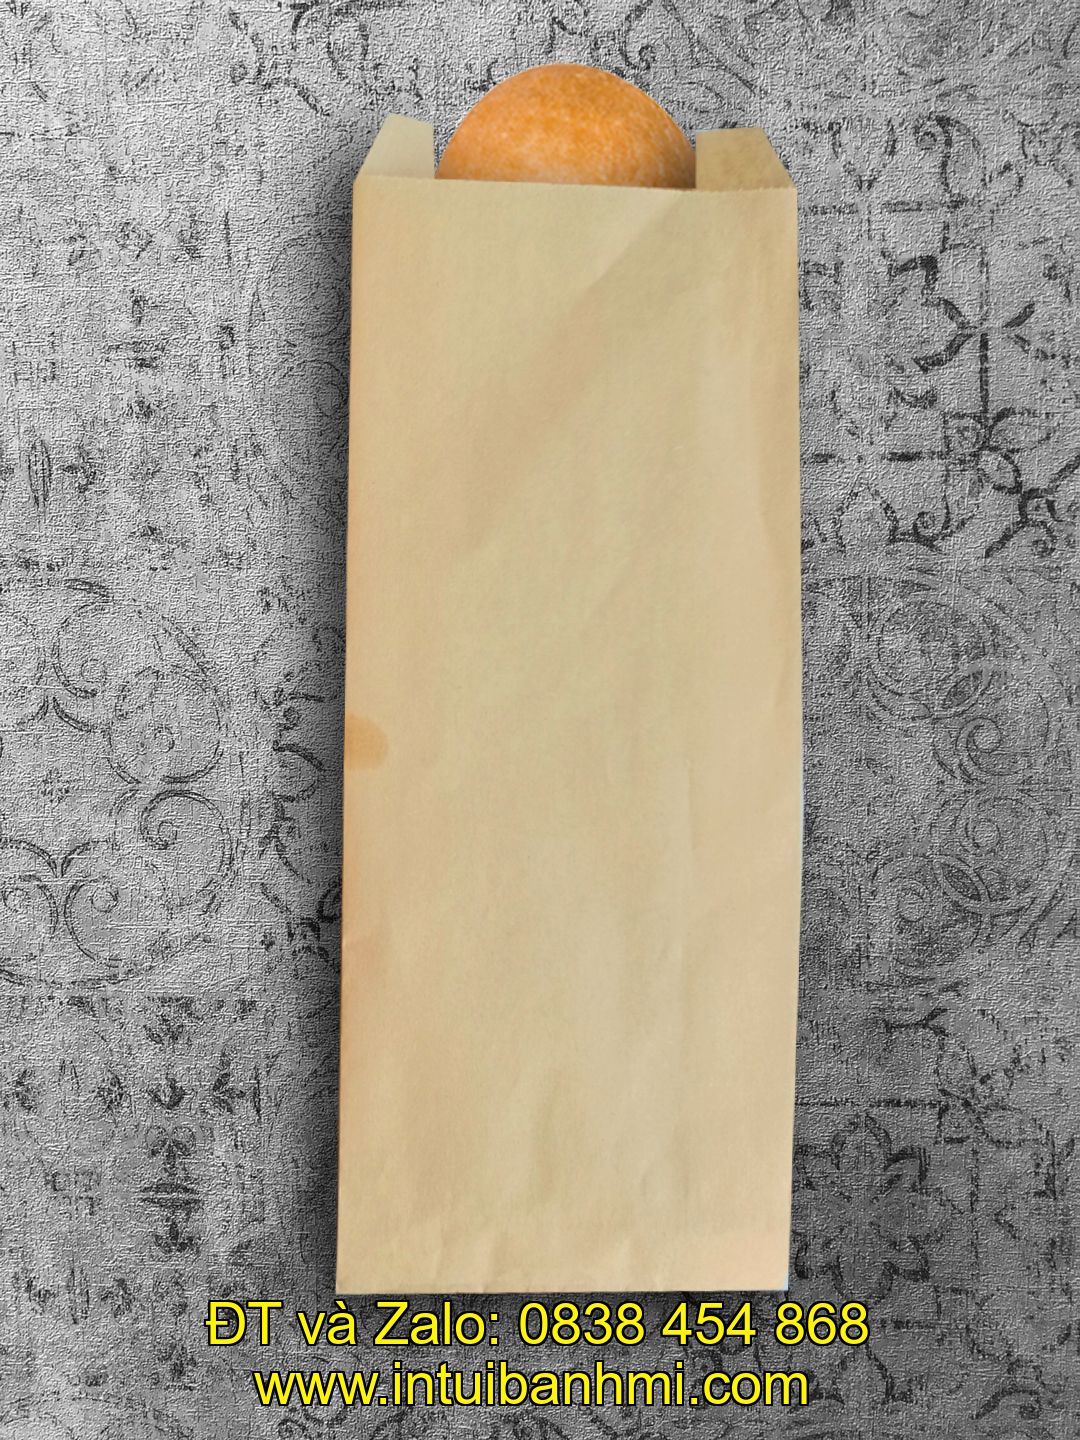 Lên ý tưởng túi và lựa chọn chất liệu giấy in ấn túi giấy đựng bánh mì